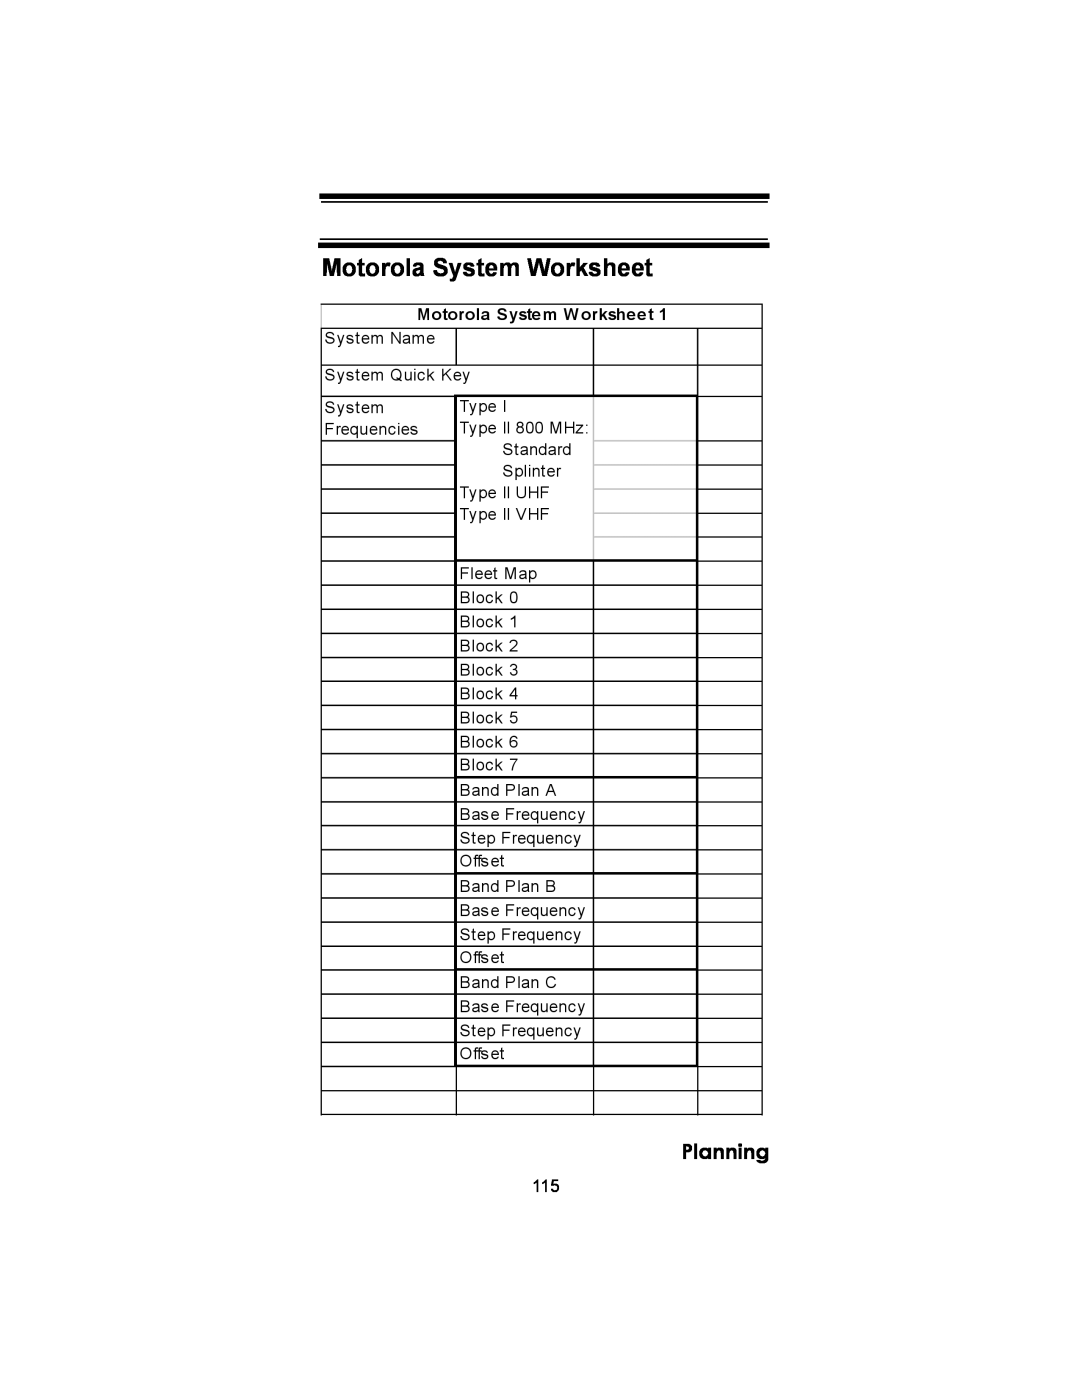 Uniden BC246T owner manual Motorola System Worksheet, Planning 